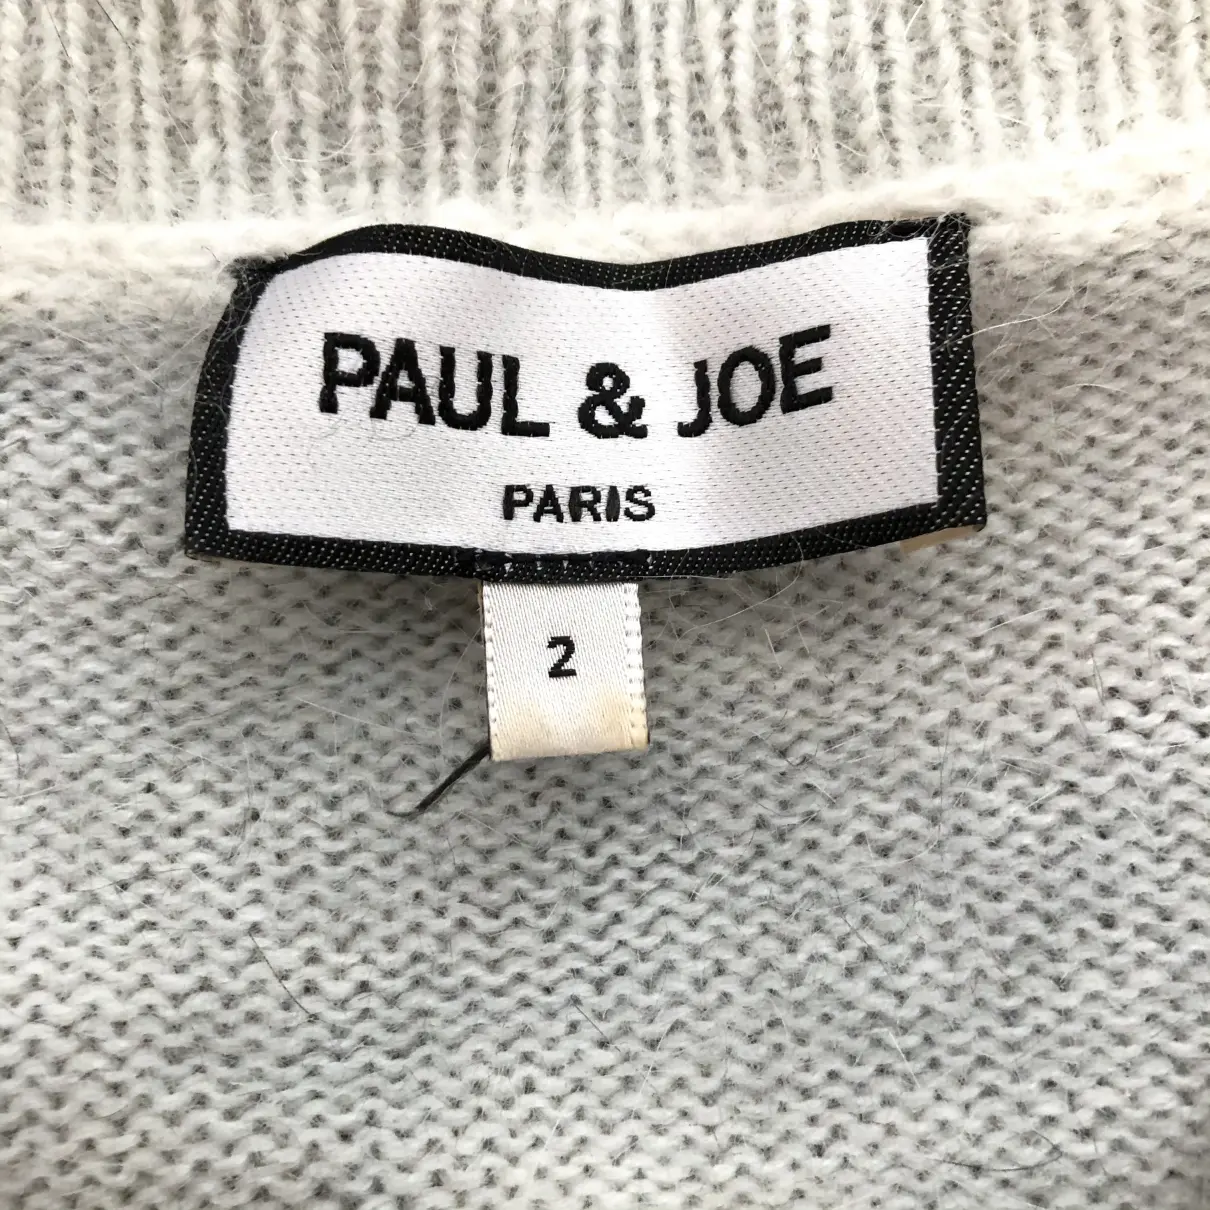 Wool jumper Paul & Joe